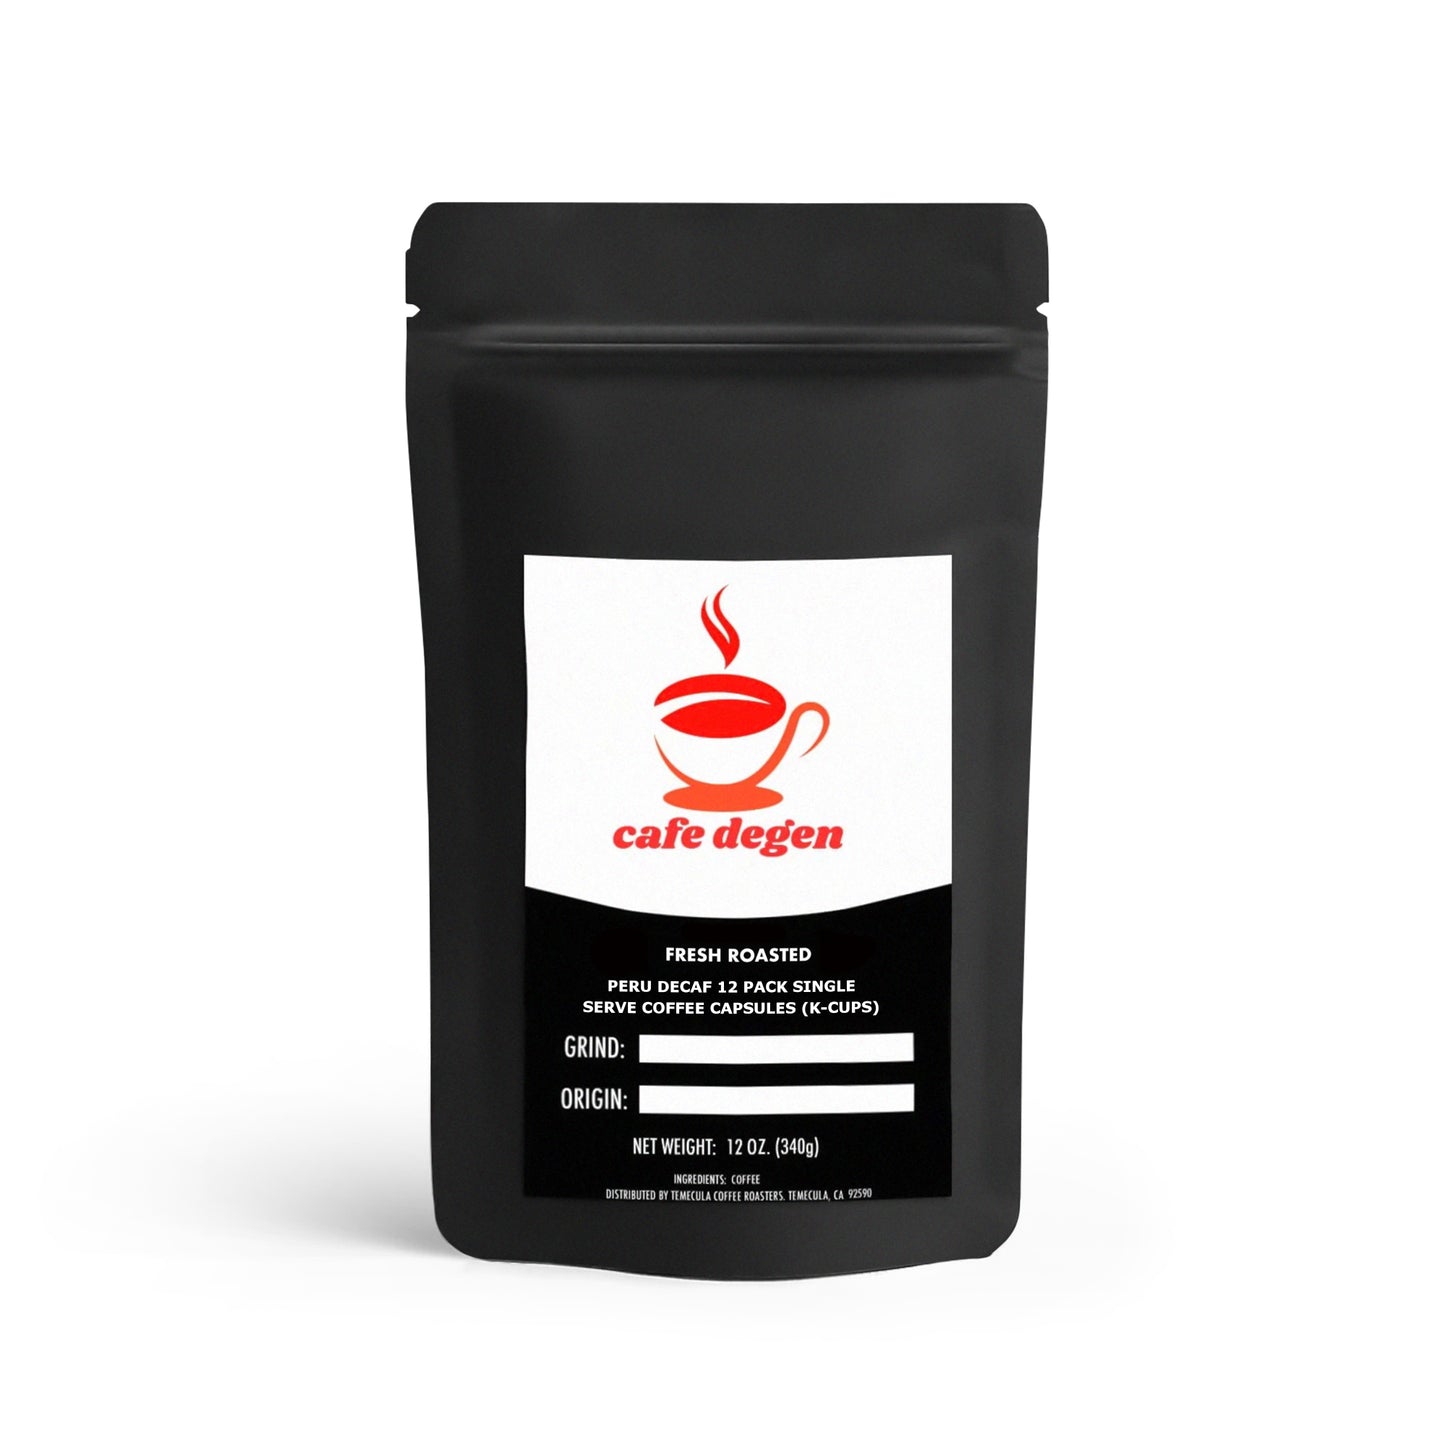 Peru Decaf 12 Pack Single Serve Coffee Capsules (K-Cups)